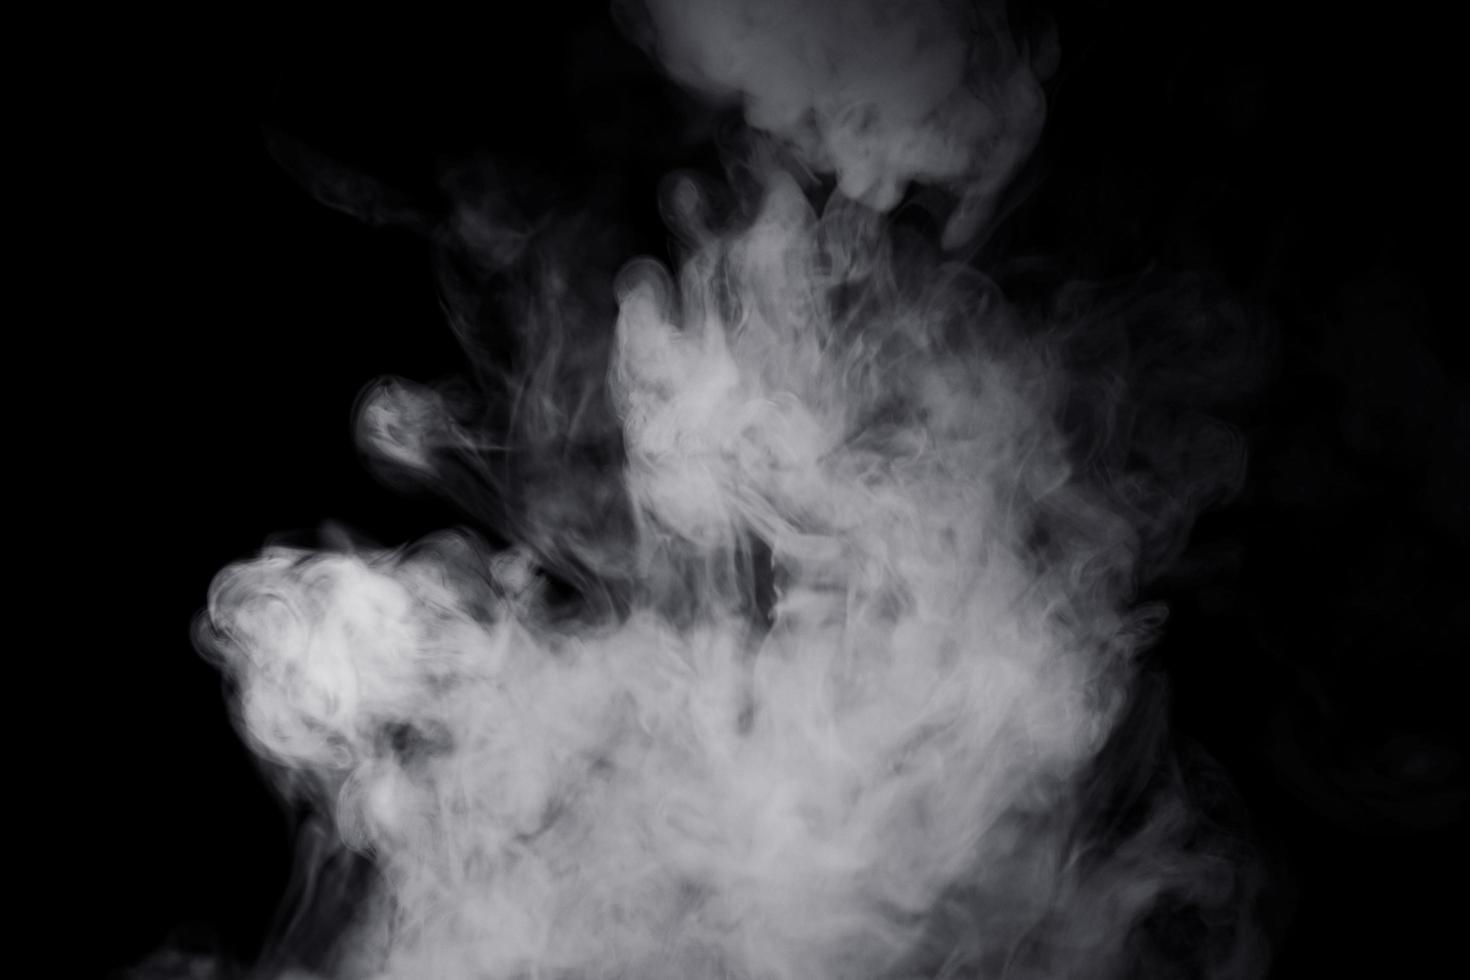 humo blanco sobre fondo negro para un efecto de superposición. un efecto de humo realista para crear un matiz intenso en una foto